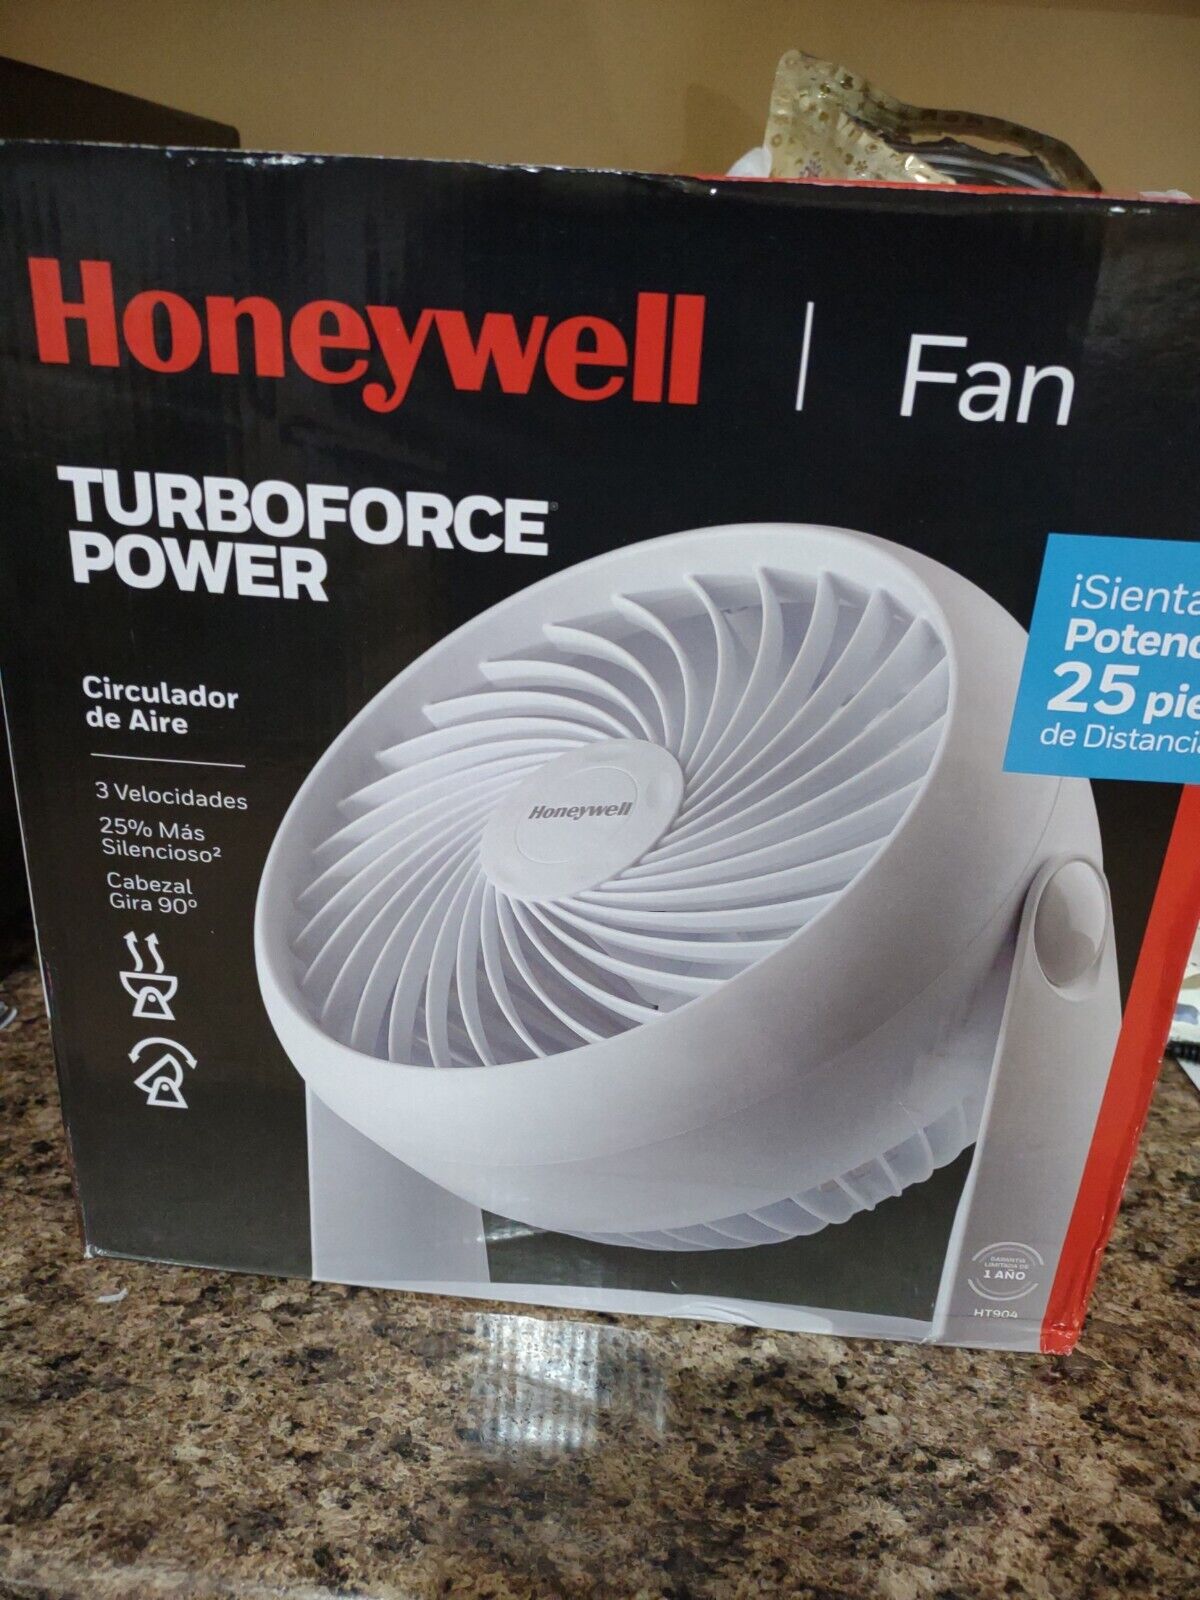 Brand New Honeywell Turboforce Power fan + Freebies